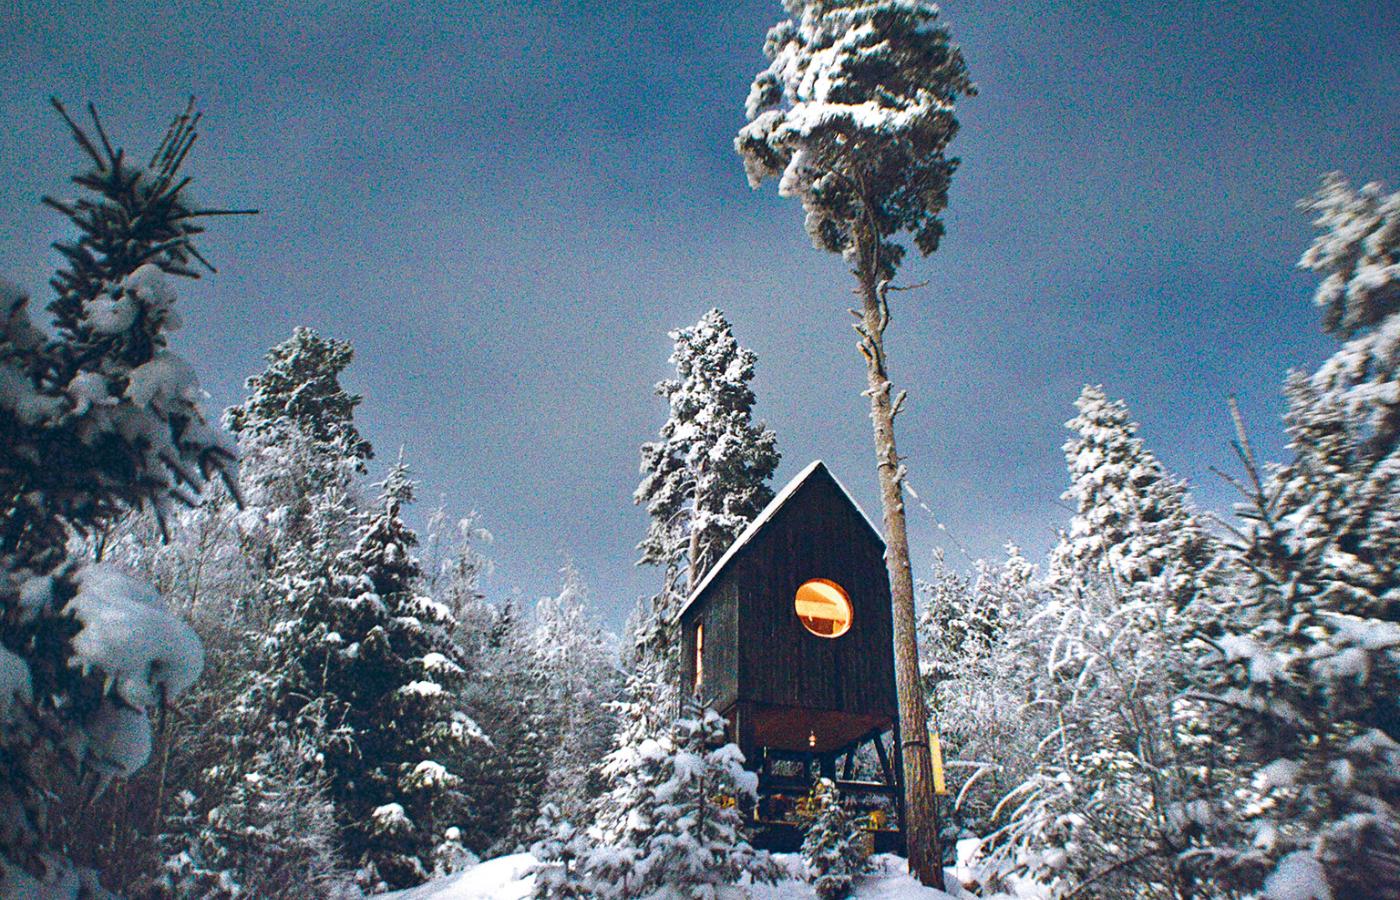 „Ptasia budka”, dom do obserwacji ptaków, zbudowany przez Damiana Maynarda w Hadelandzie w Norwegii. (Fot. z książki „Cabin Porn. Wnętrza”, wyd. Smak Słowa)